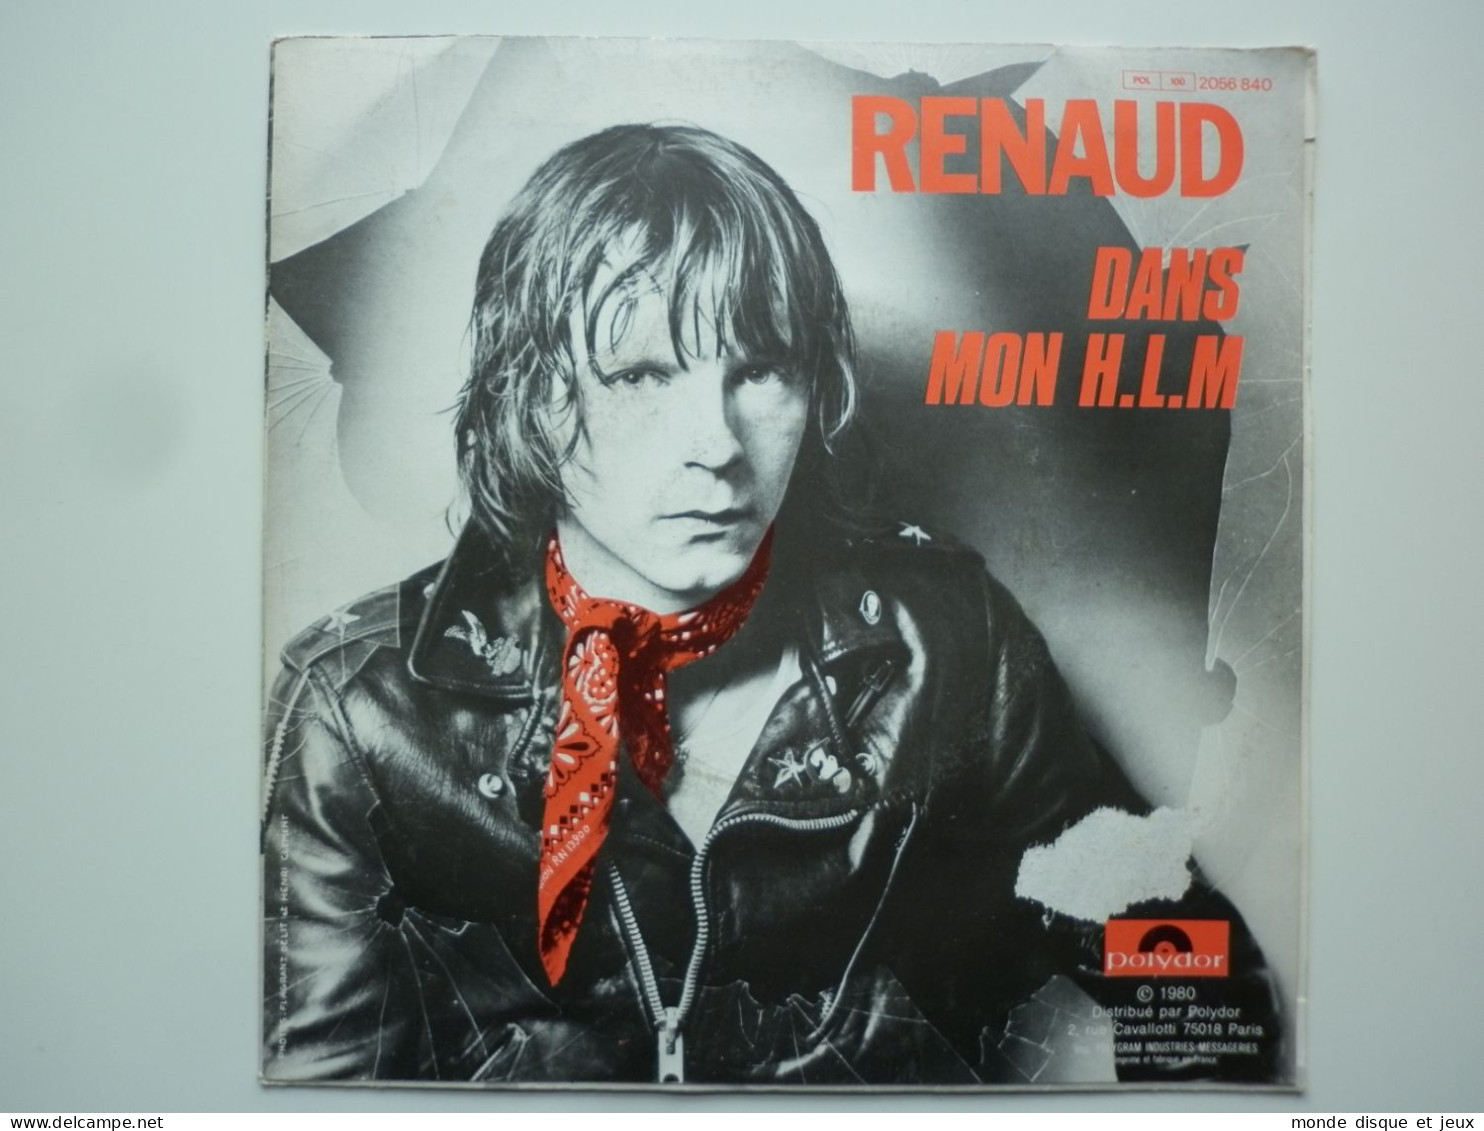 Renaud 45Tours SP Vinyle Marche A L'ombre / Dans Mon H.L.M - Other - French Music